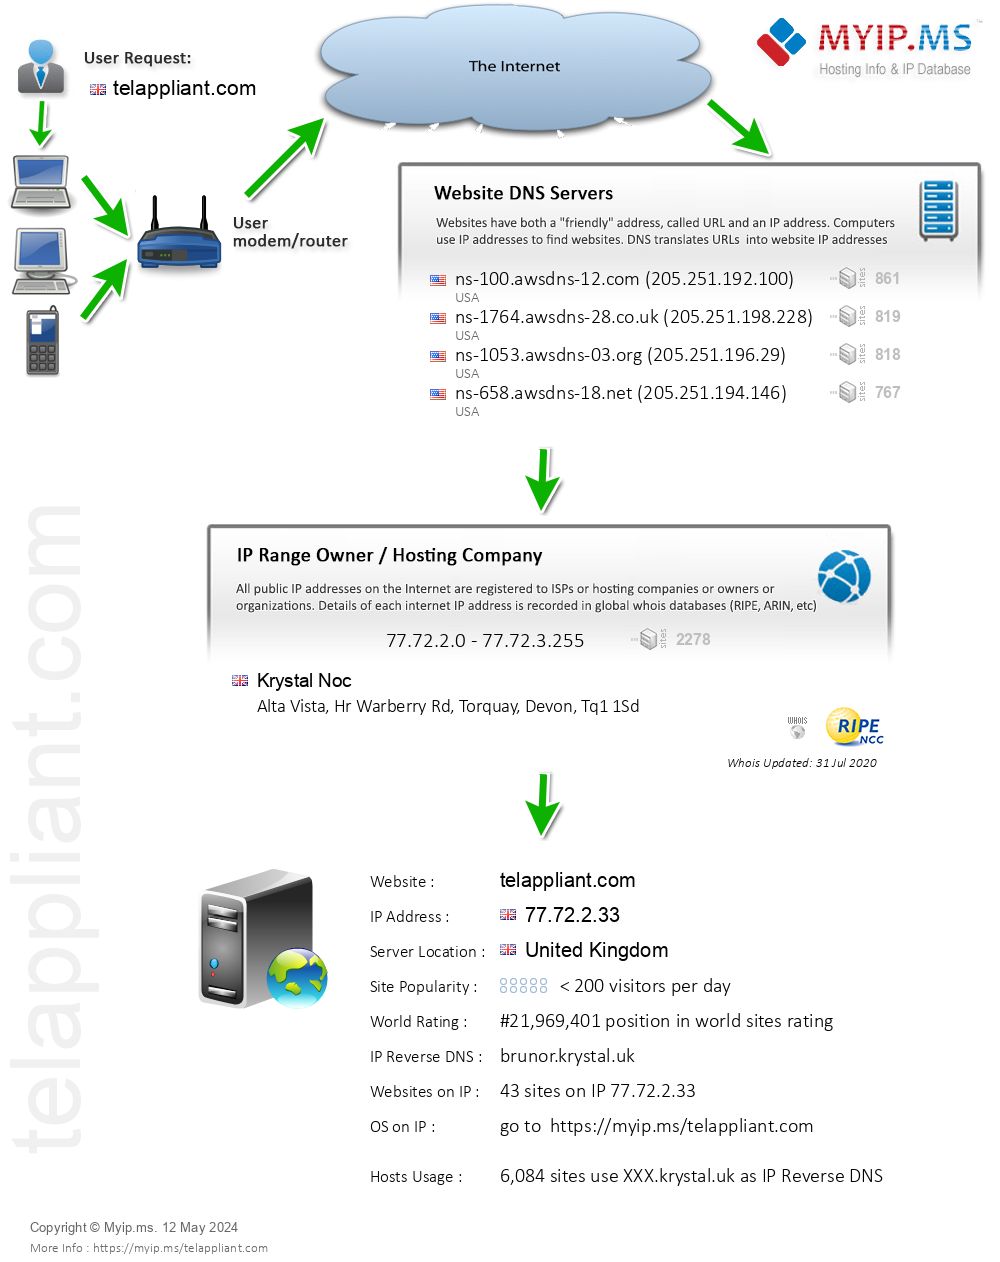 Telappliant.com - Website Hosting Visual IP Diagram